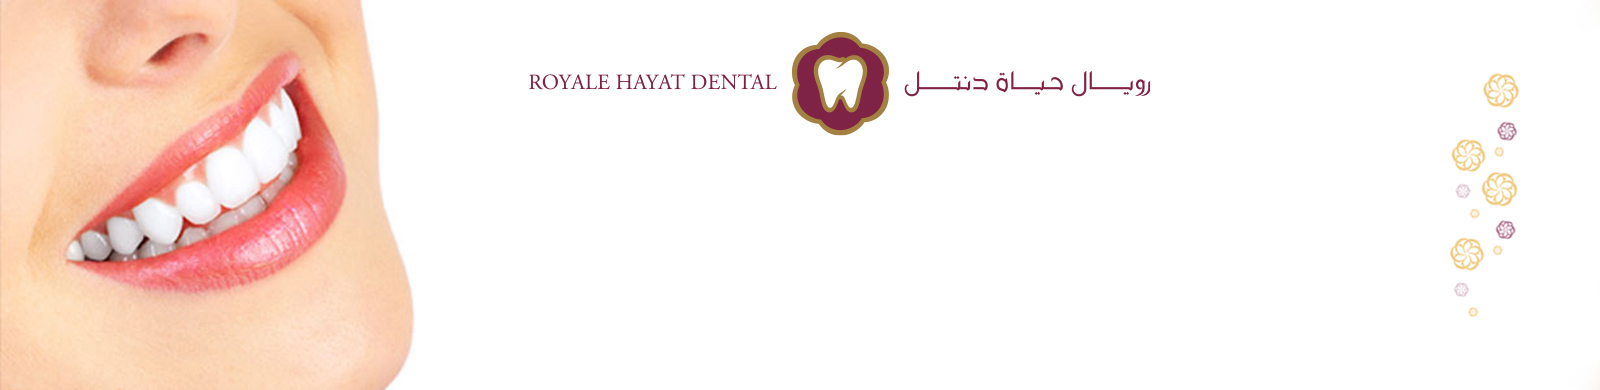 PageImageRoyale-Hayat-Dental637441586305783493.jpg